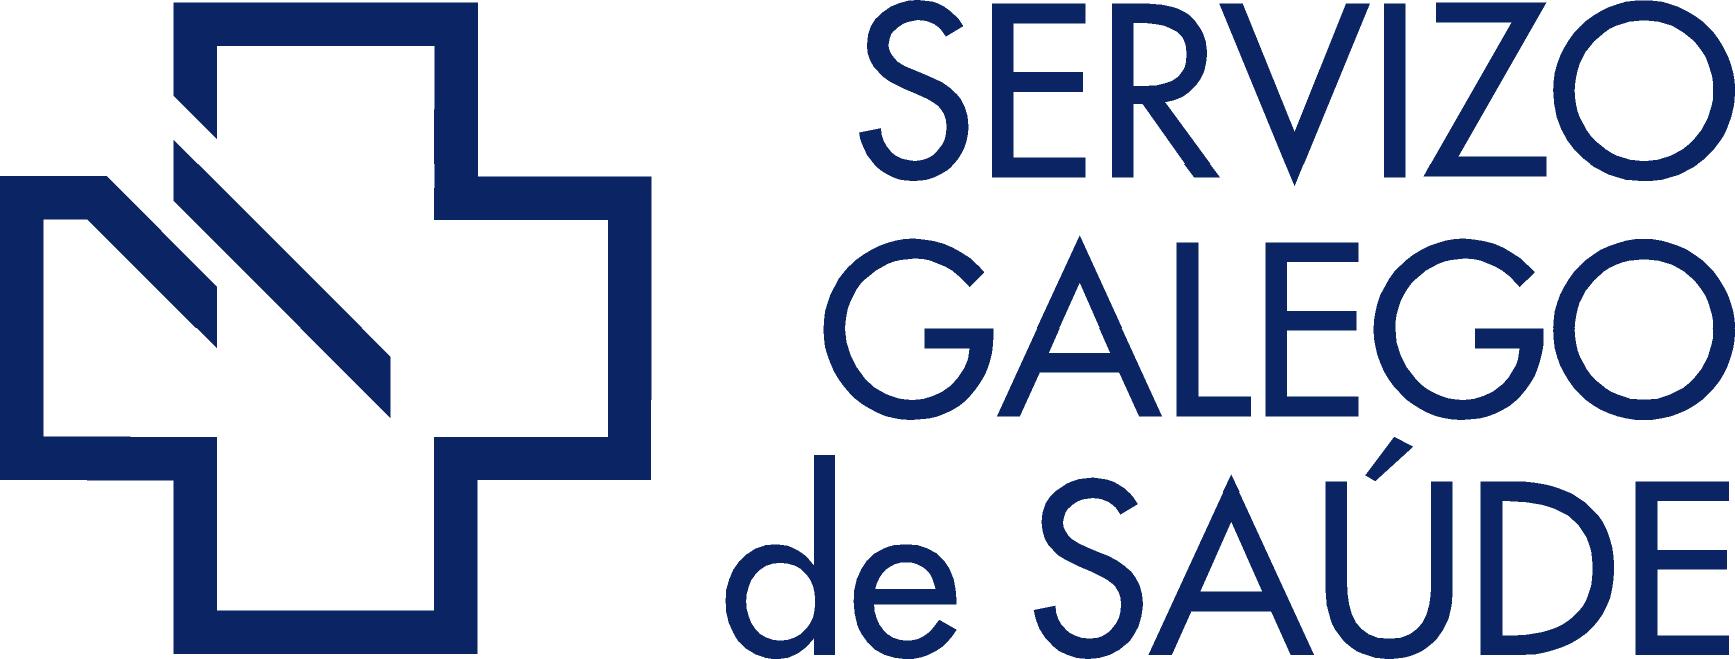 Logo Servizo Galego de Saúde, SERGAS